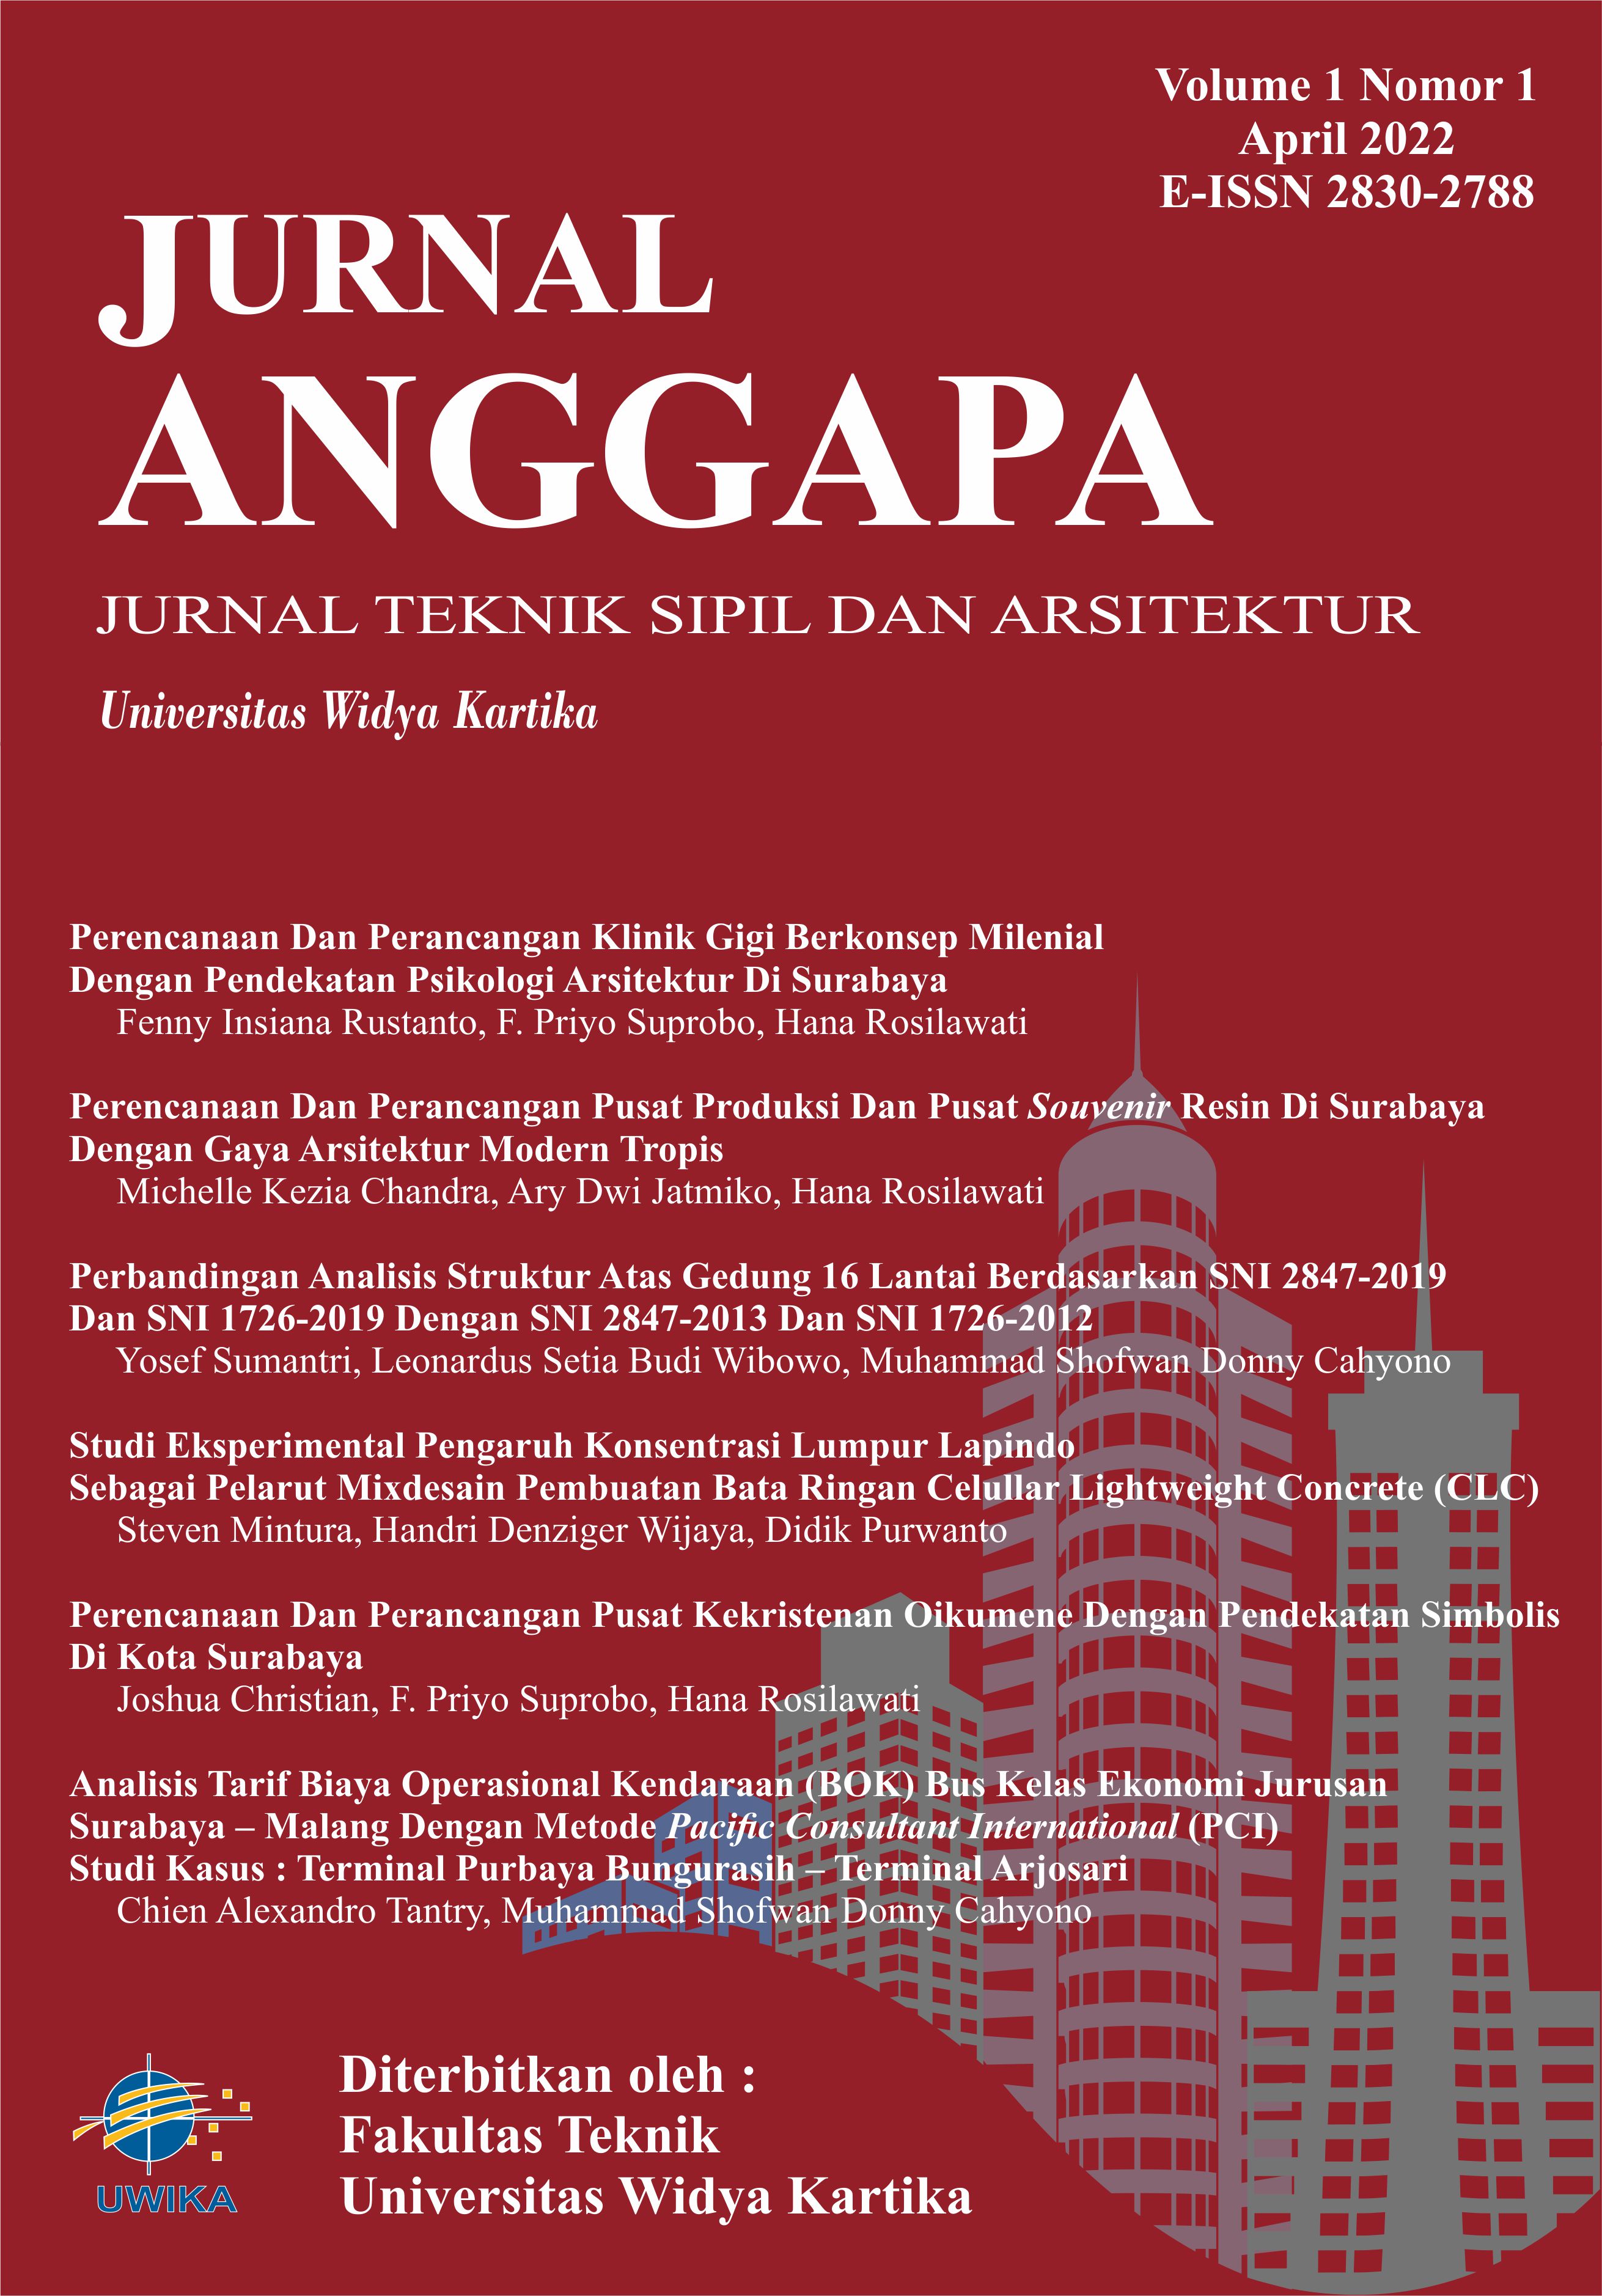 					Lihat Vol 1 No 1 (2022): ANGGAPA Volume 1 No 1 April 2022
				